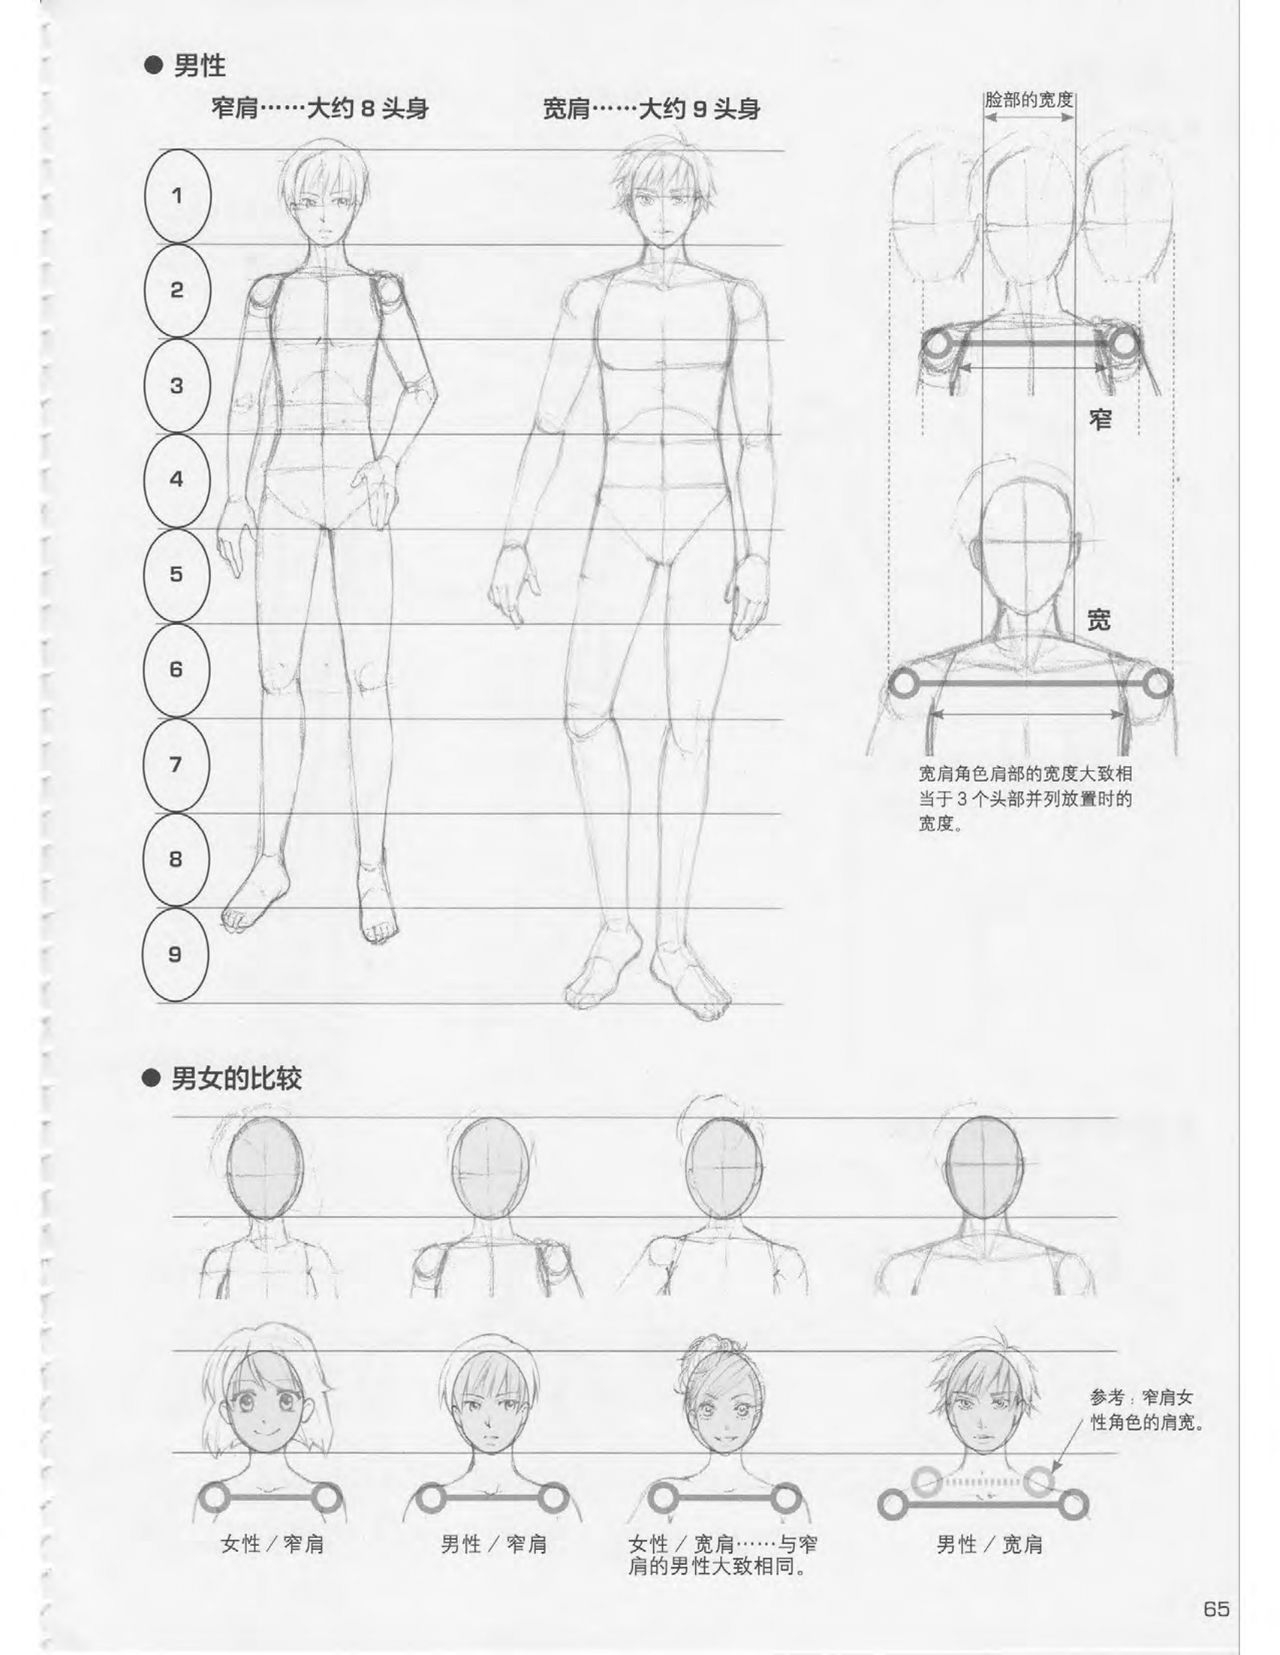 Japanese Manga Master Lecture 3: Lin Akira and Kakumaru Maru Talk About Glamorous Character Modeling 65